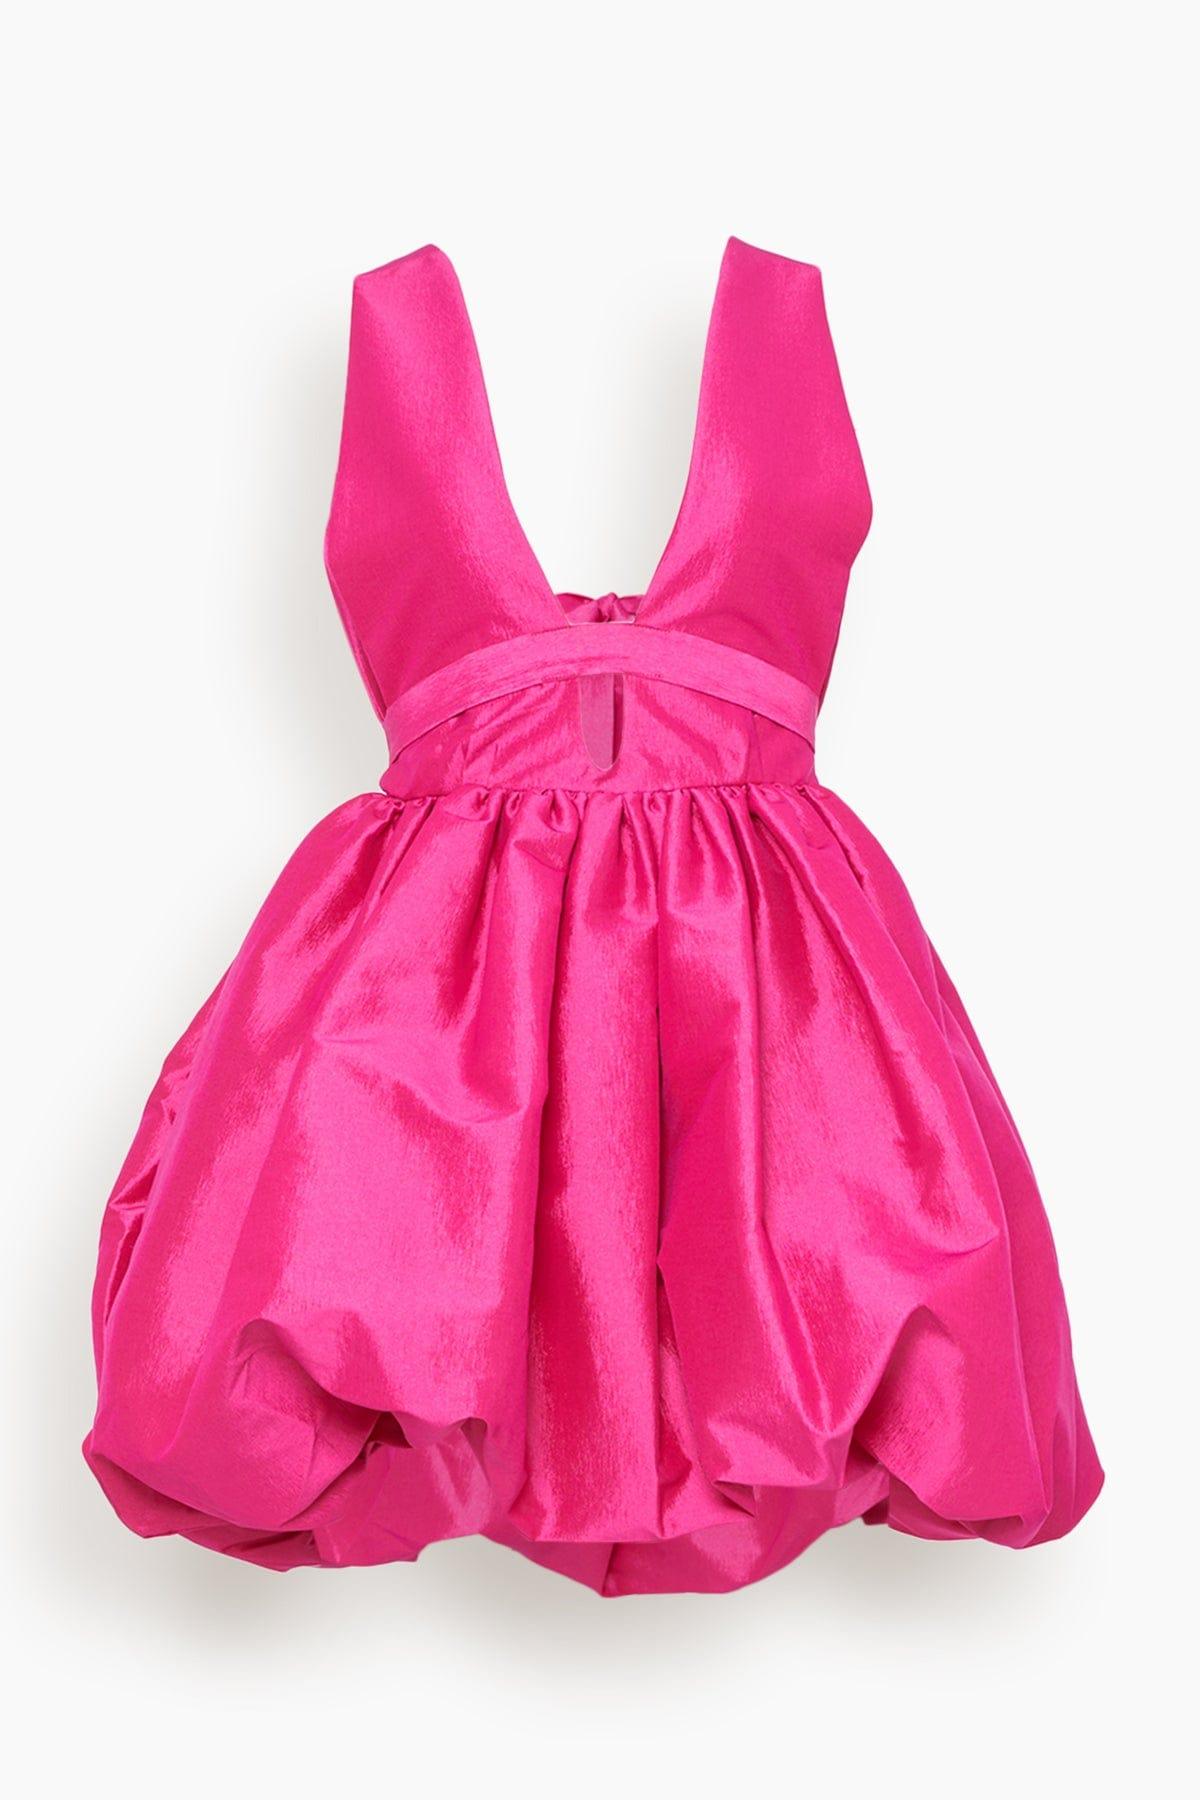 Kika Vargas Hilma Dress in Pink | Lyst